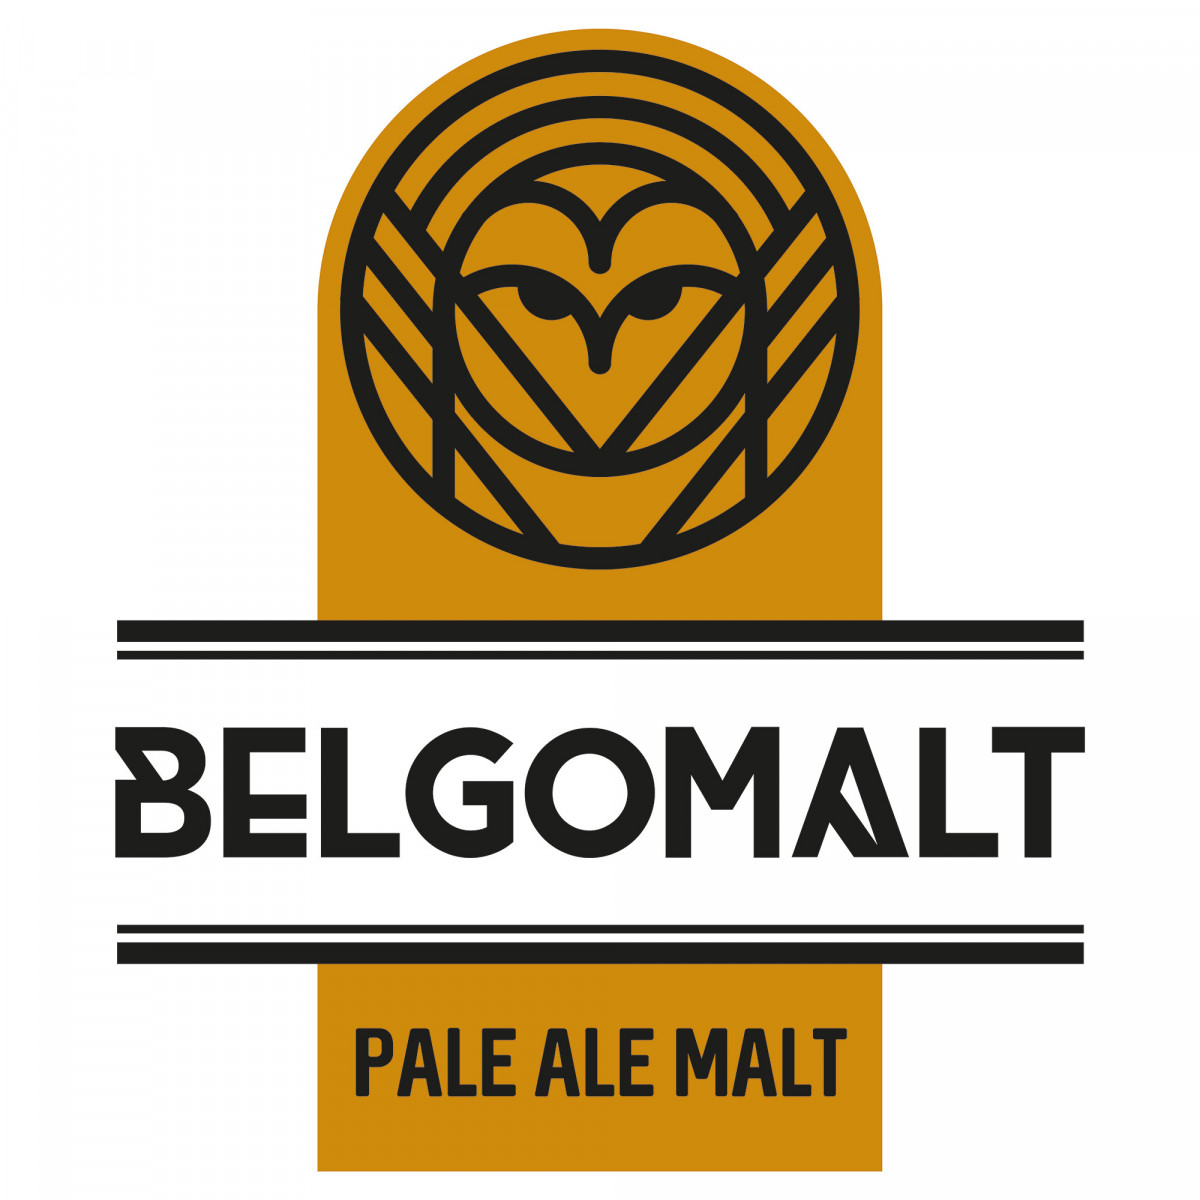 Belgomalt Pale Ale 5 - 7 EBC 25 kg